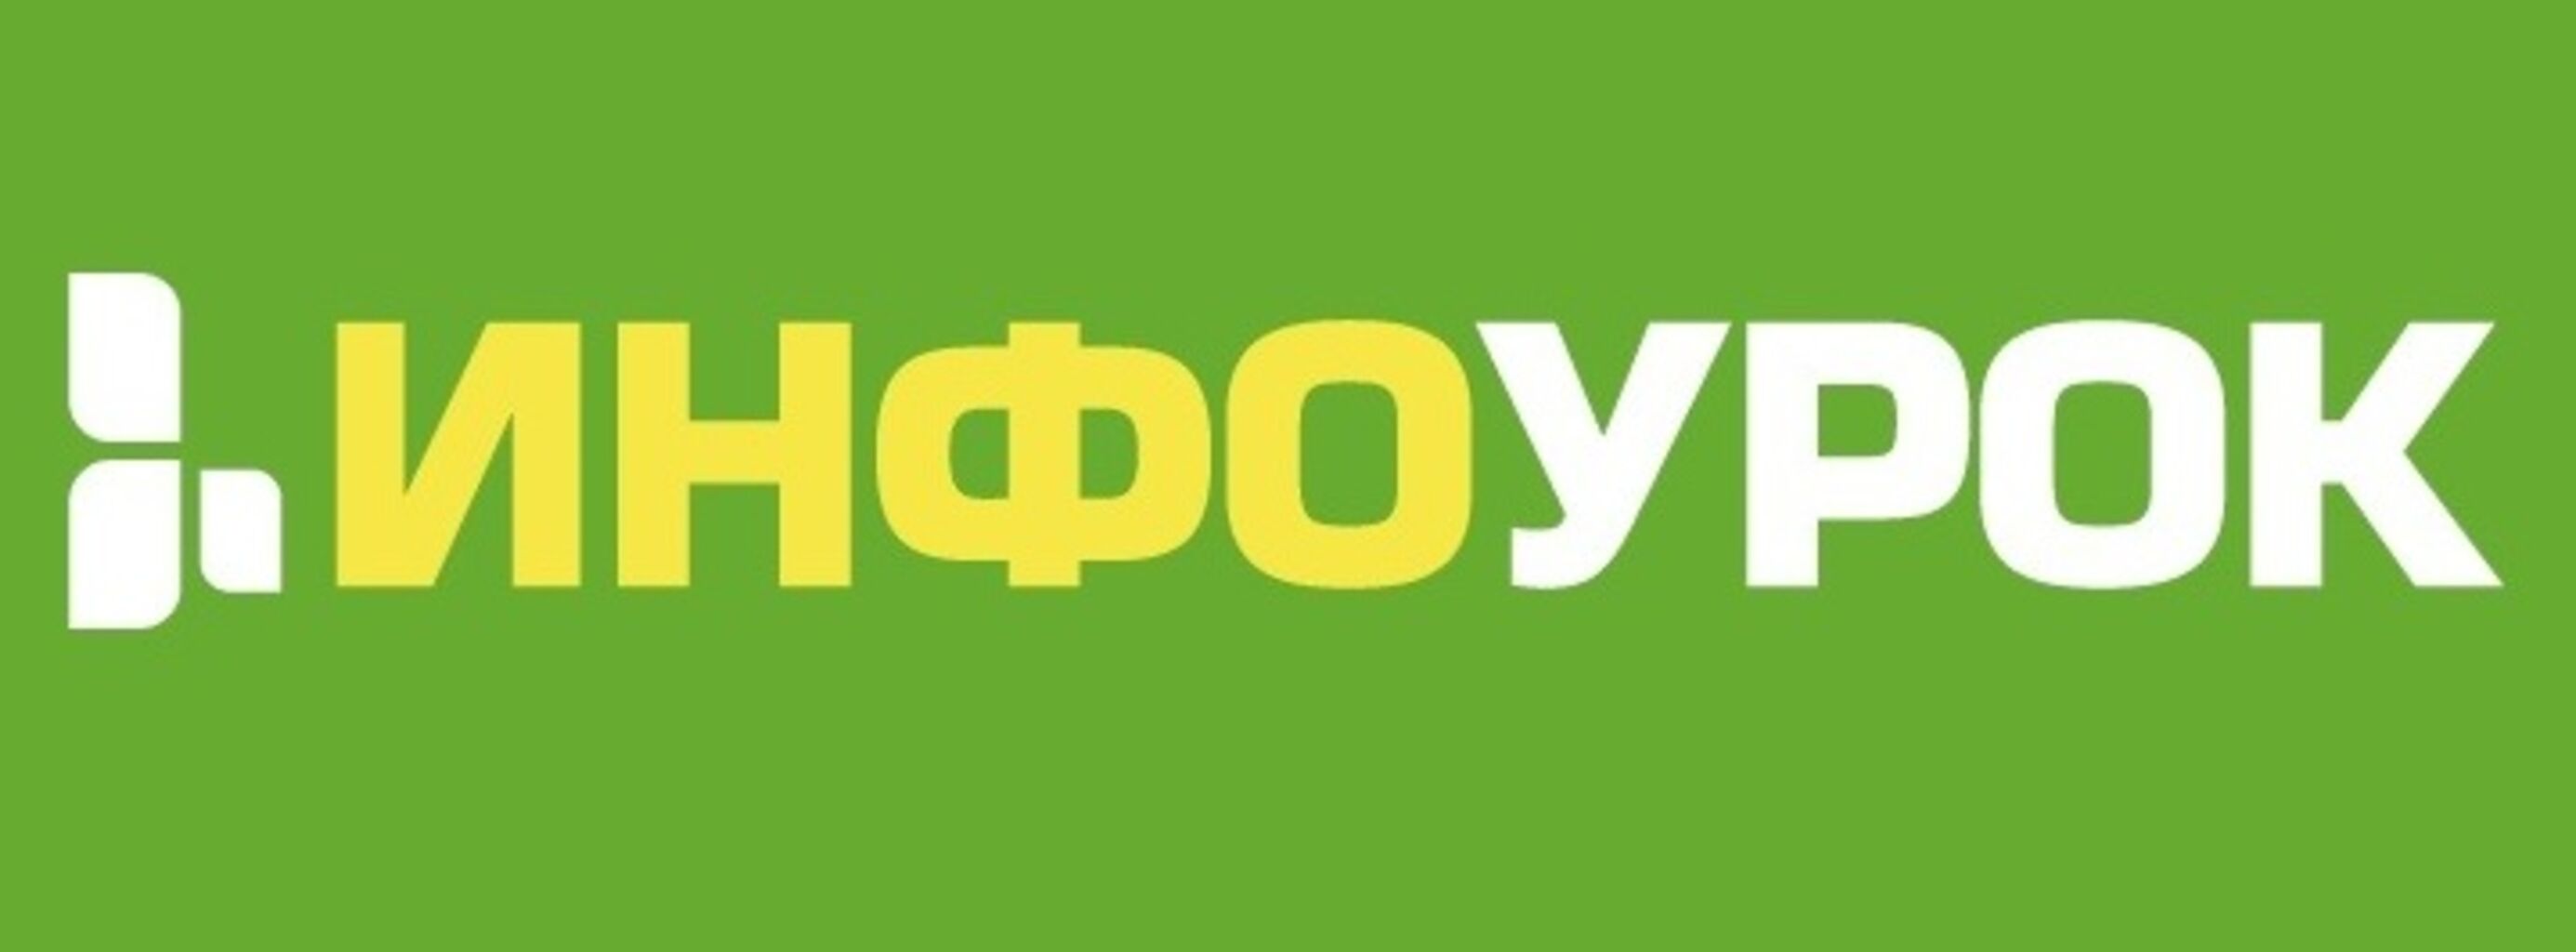 Https infourok ru kontrolnaya. Инфоурок. Инфоурок логотип. Инфоурок фото.